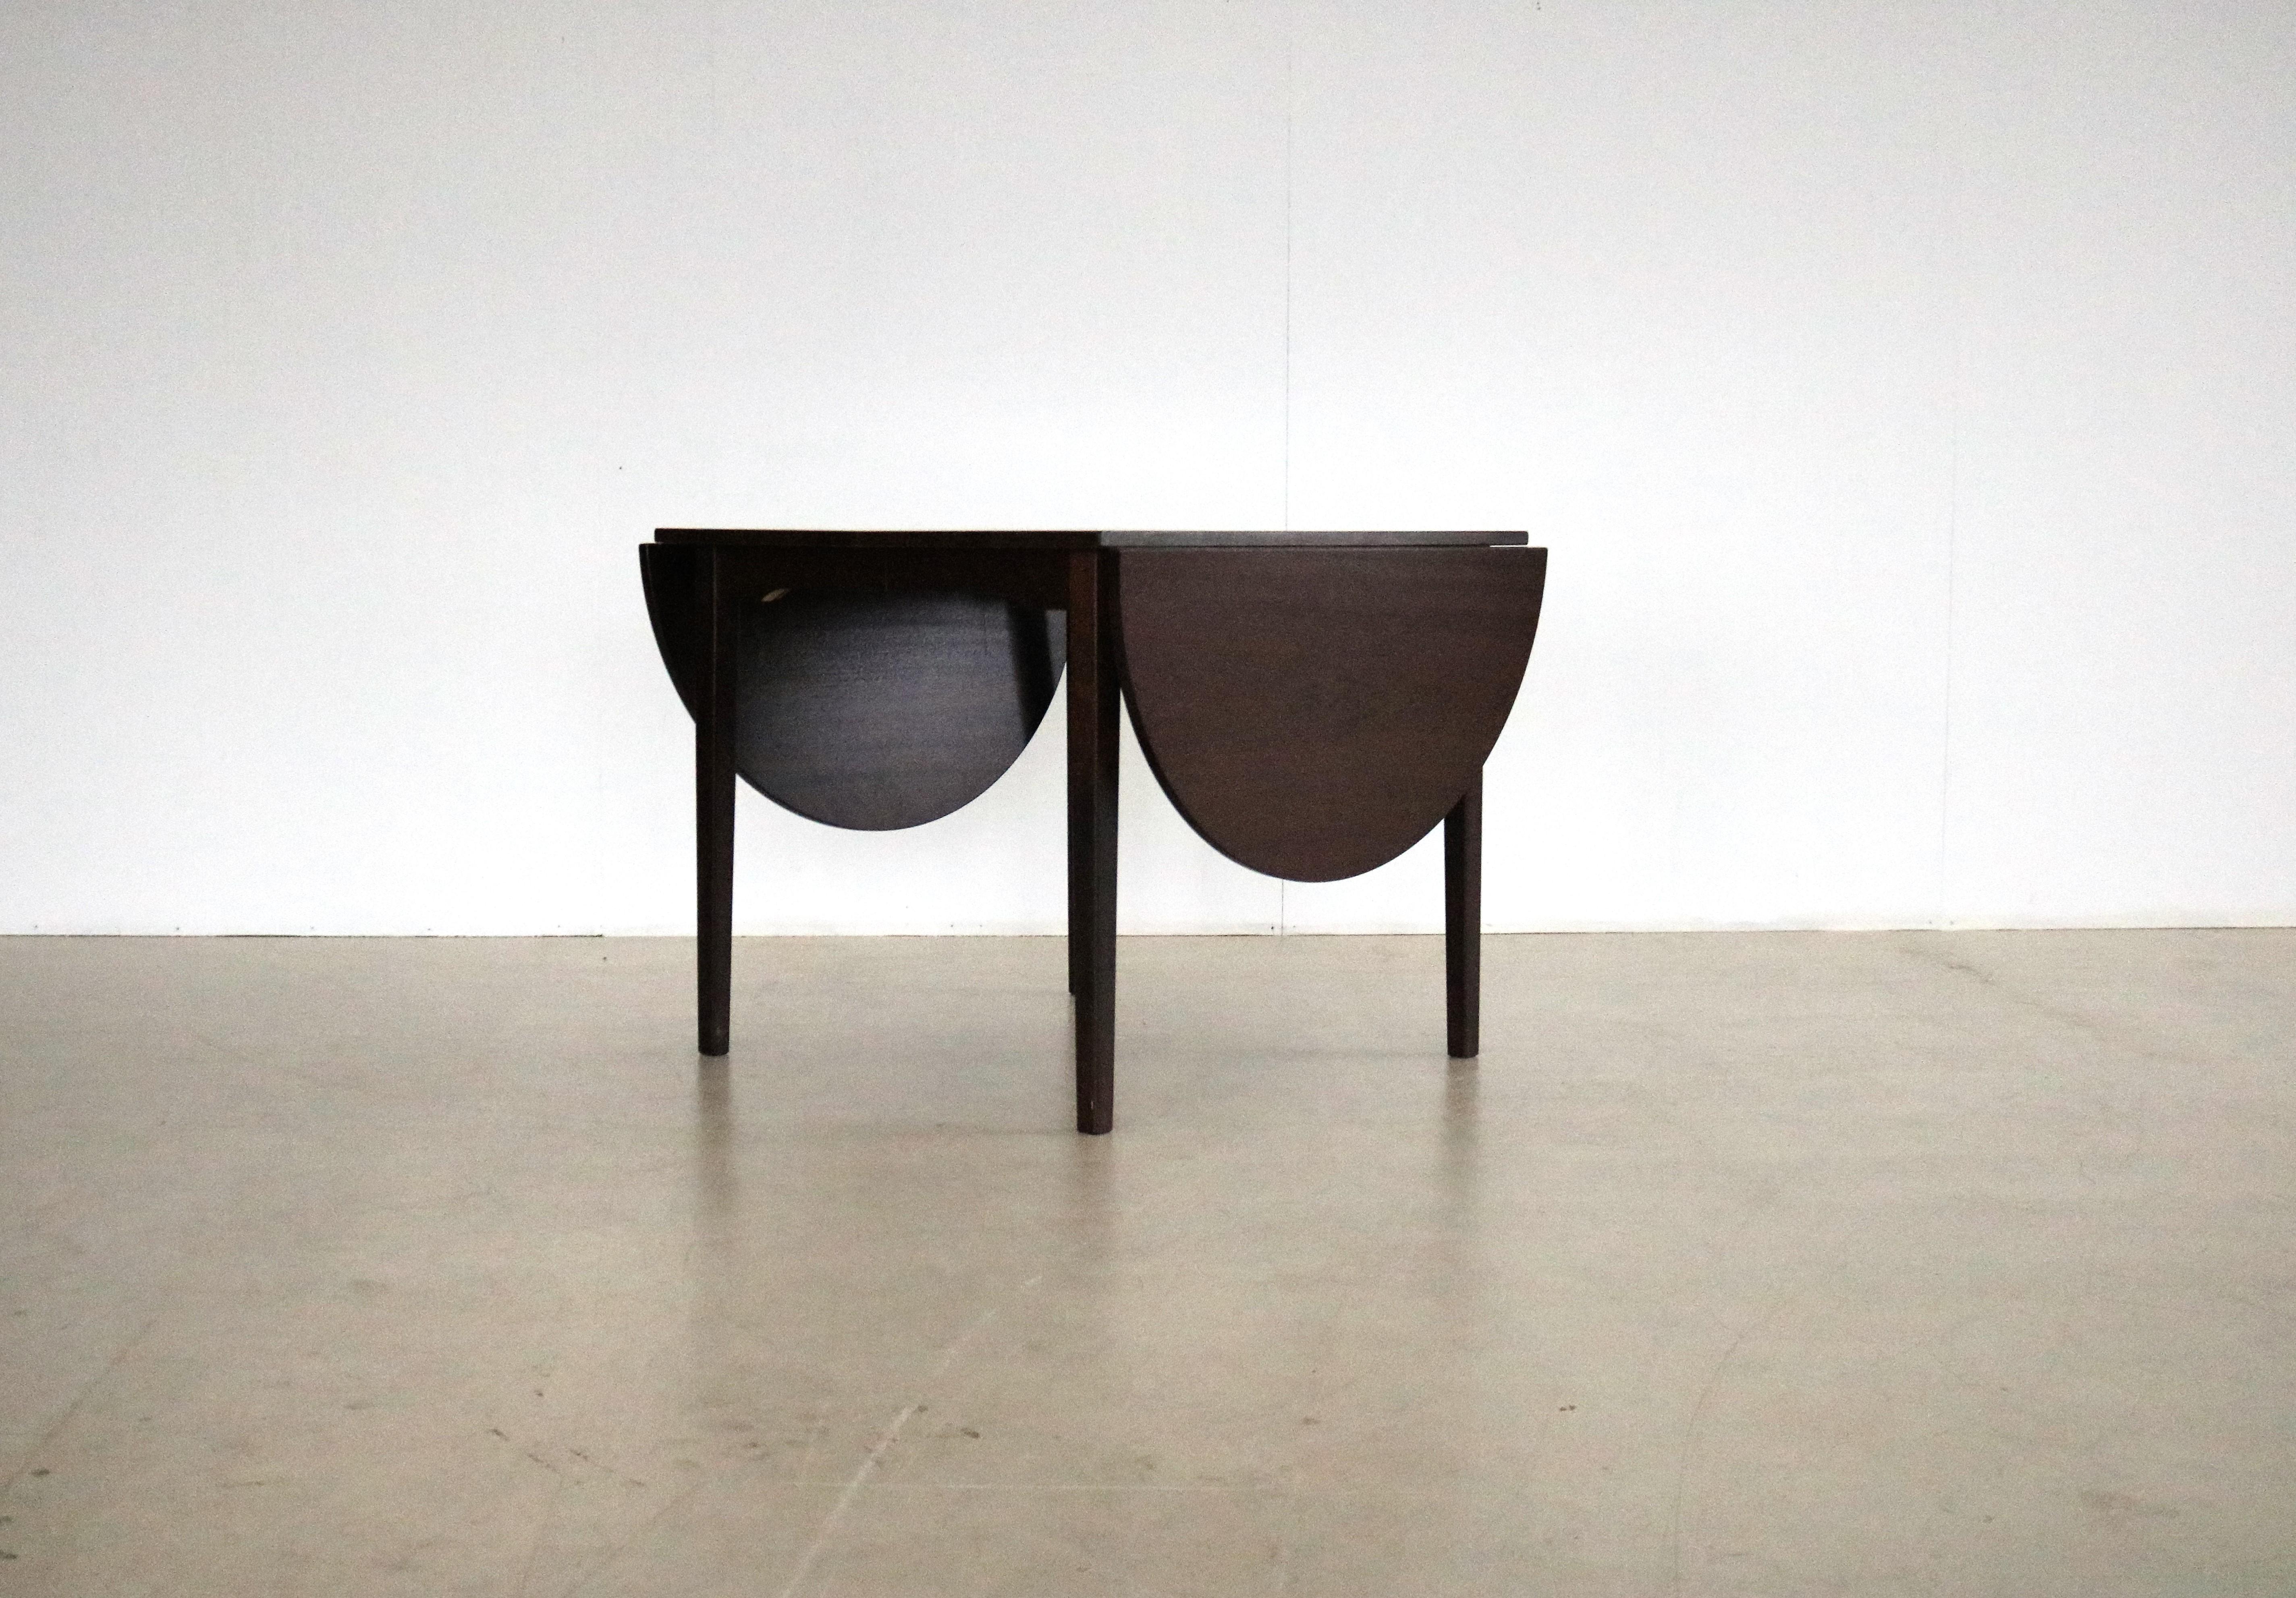 table à manger vintage  tableau  extensible  60s  Danois

période  60's
designs  Fabricant de meubles danois  Danemark
conditions  bon  légers signes d'utilisation
taille  72 x 84 x 84 (hxlxp) + 2x hémisphère de 42 + 2x feuille d'insertion de 41,5